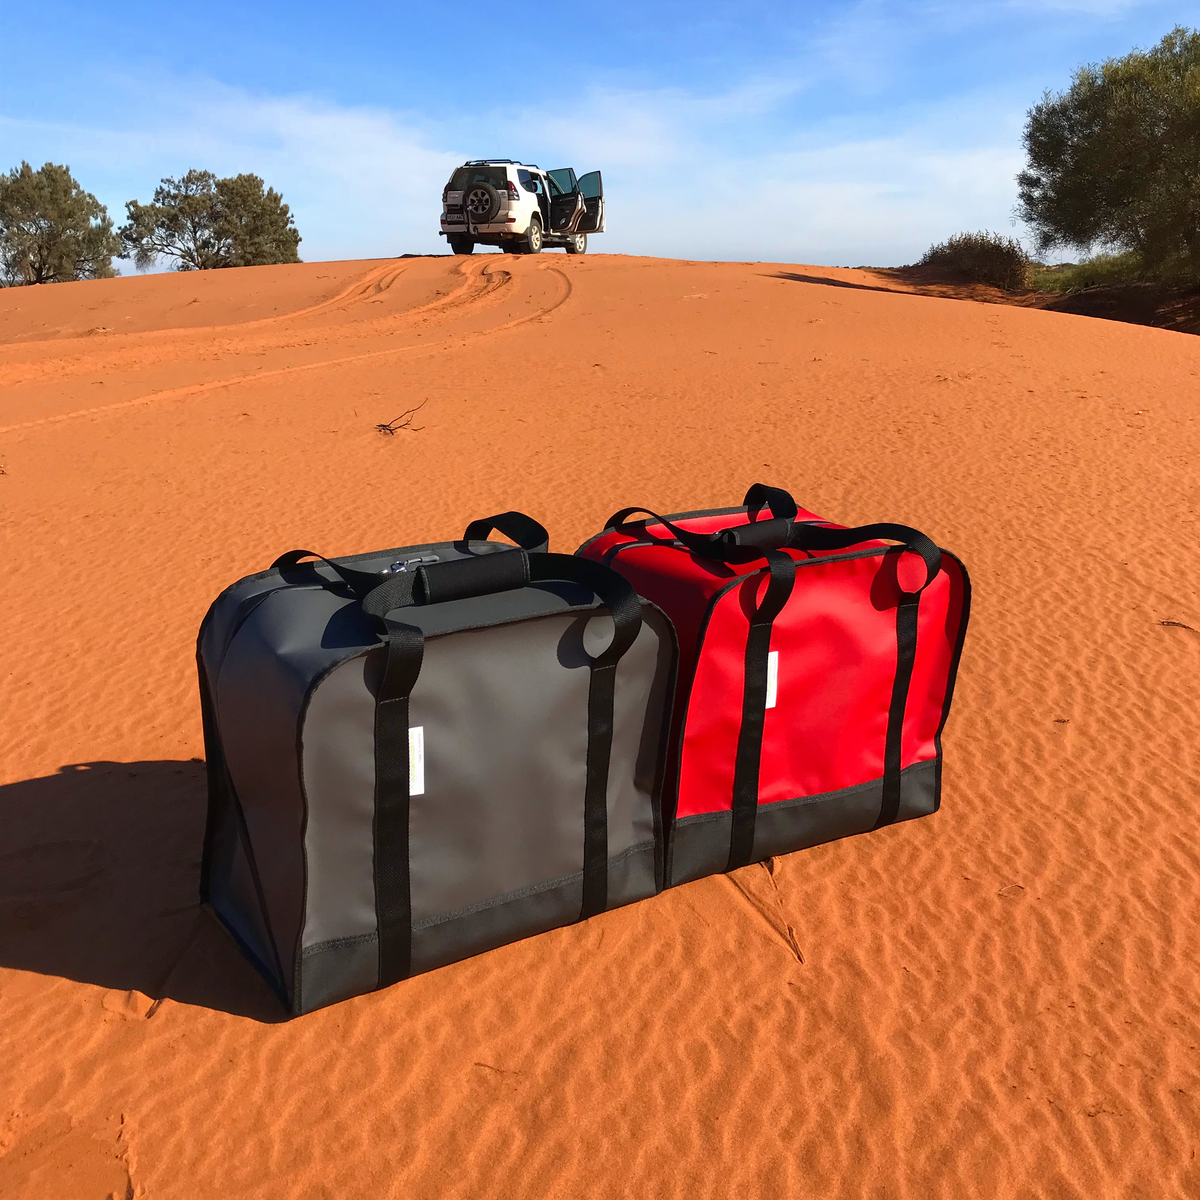 Generator carry bag for camping and caravan